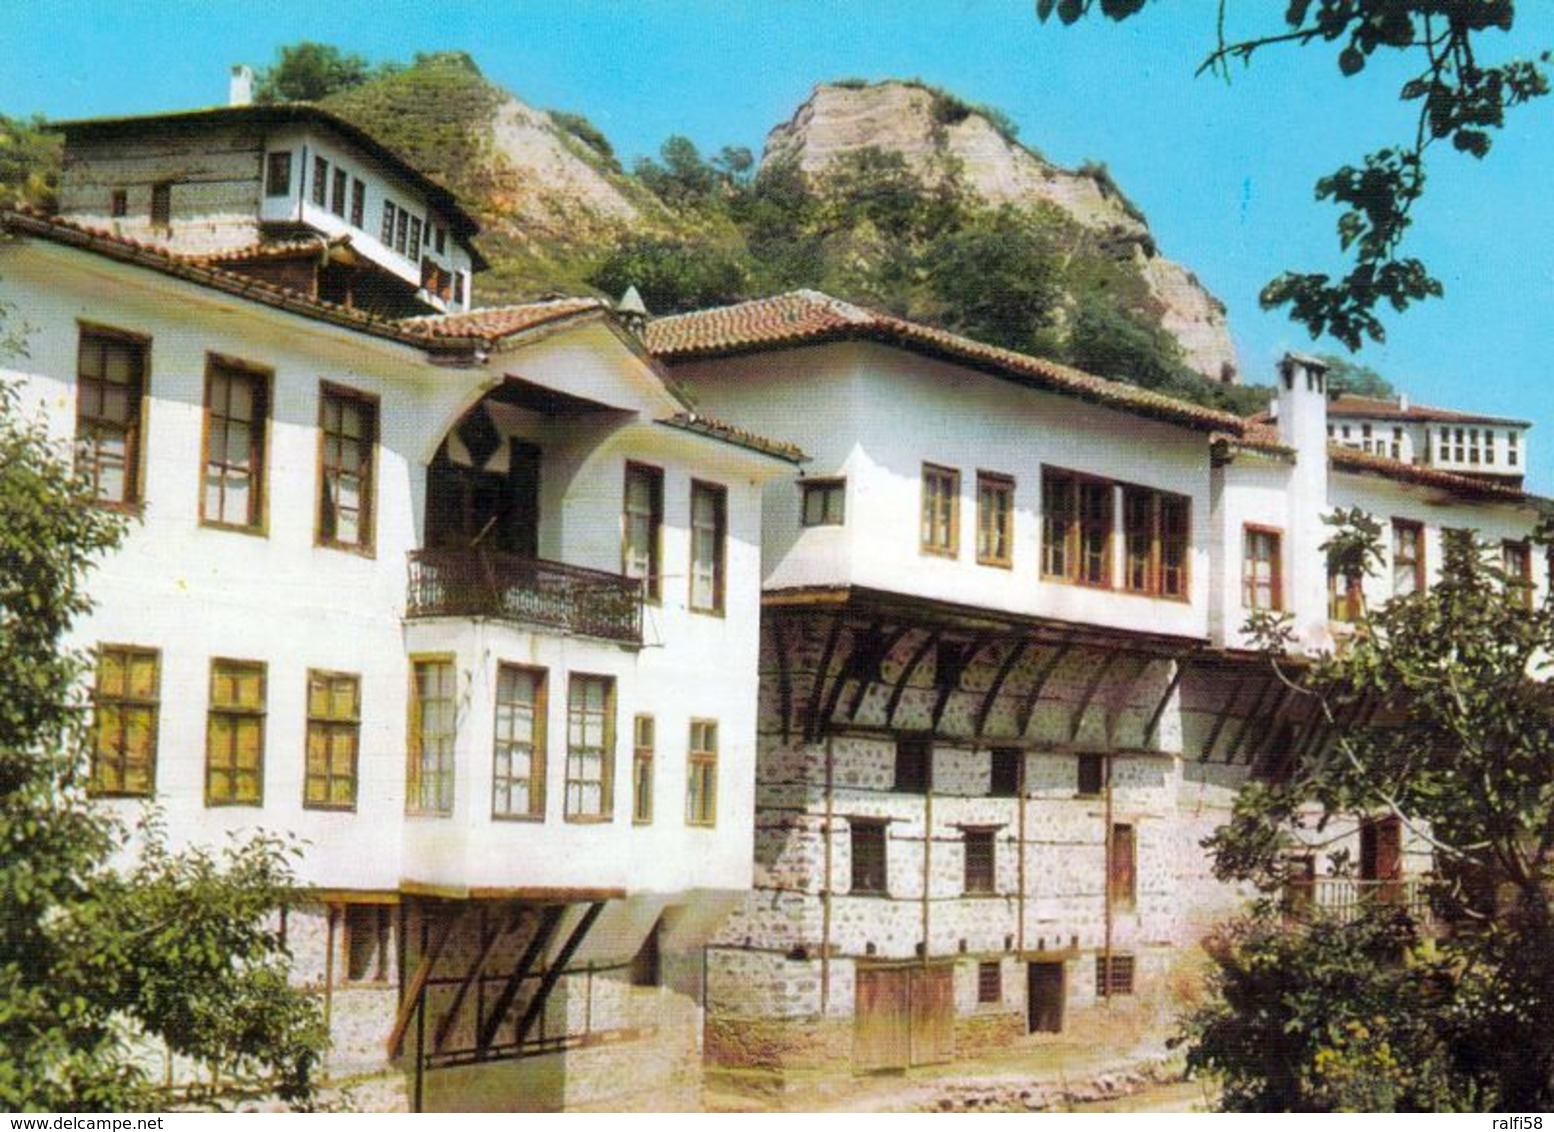 1 AK Bulgarien * Hist. Häuser In Melnik - Die Kleinste Stadt Bulgariens Mit Weniger Als 300 Einwohnern * - Bulgarie